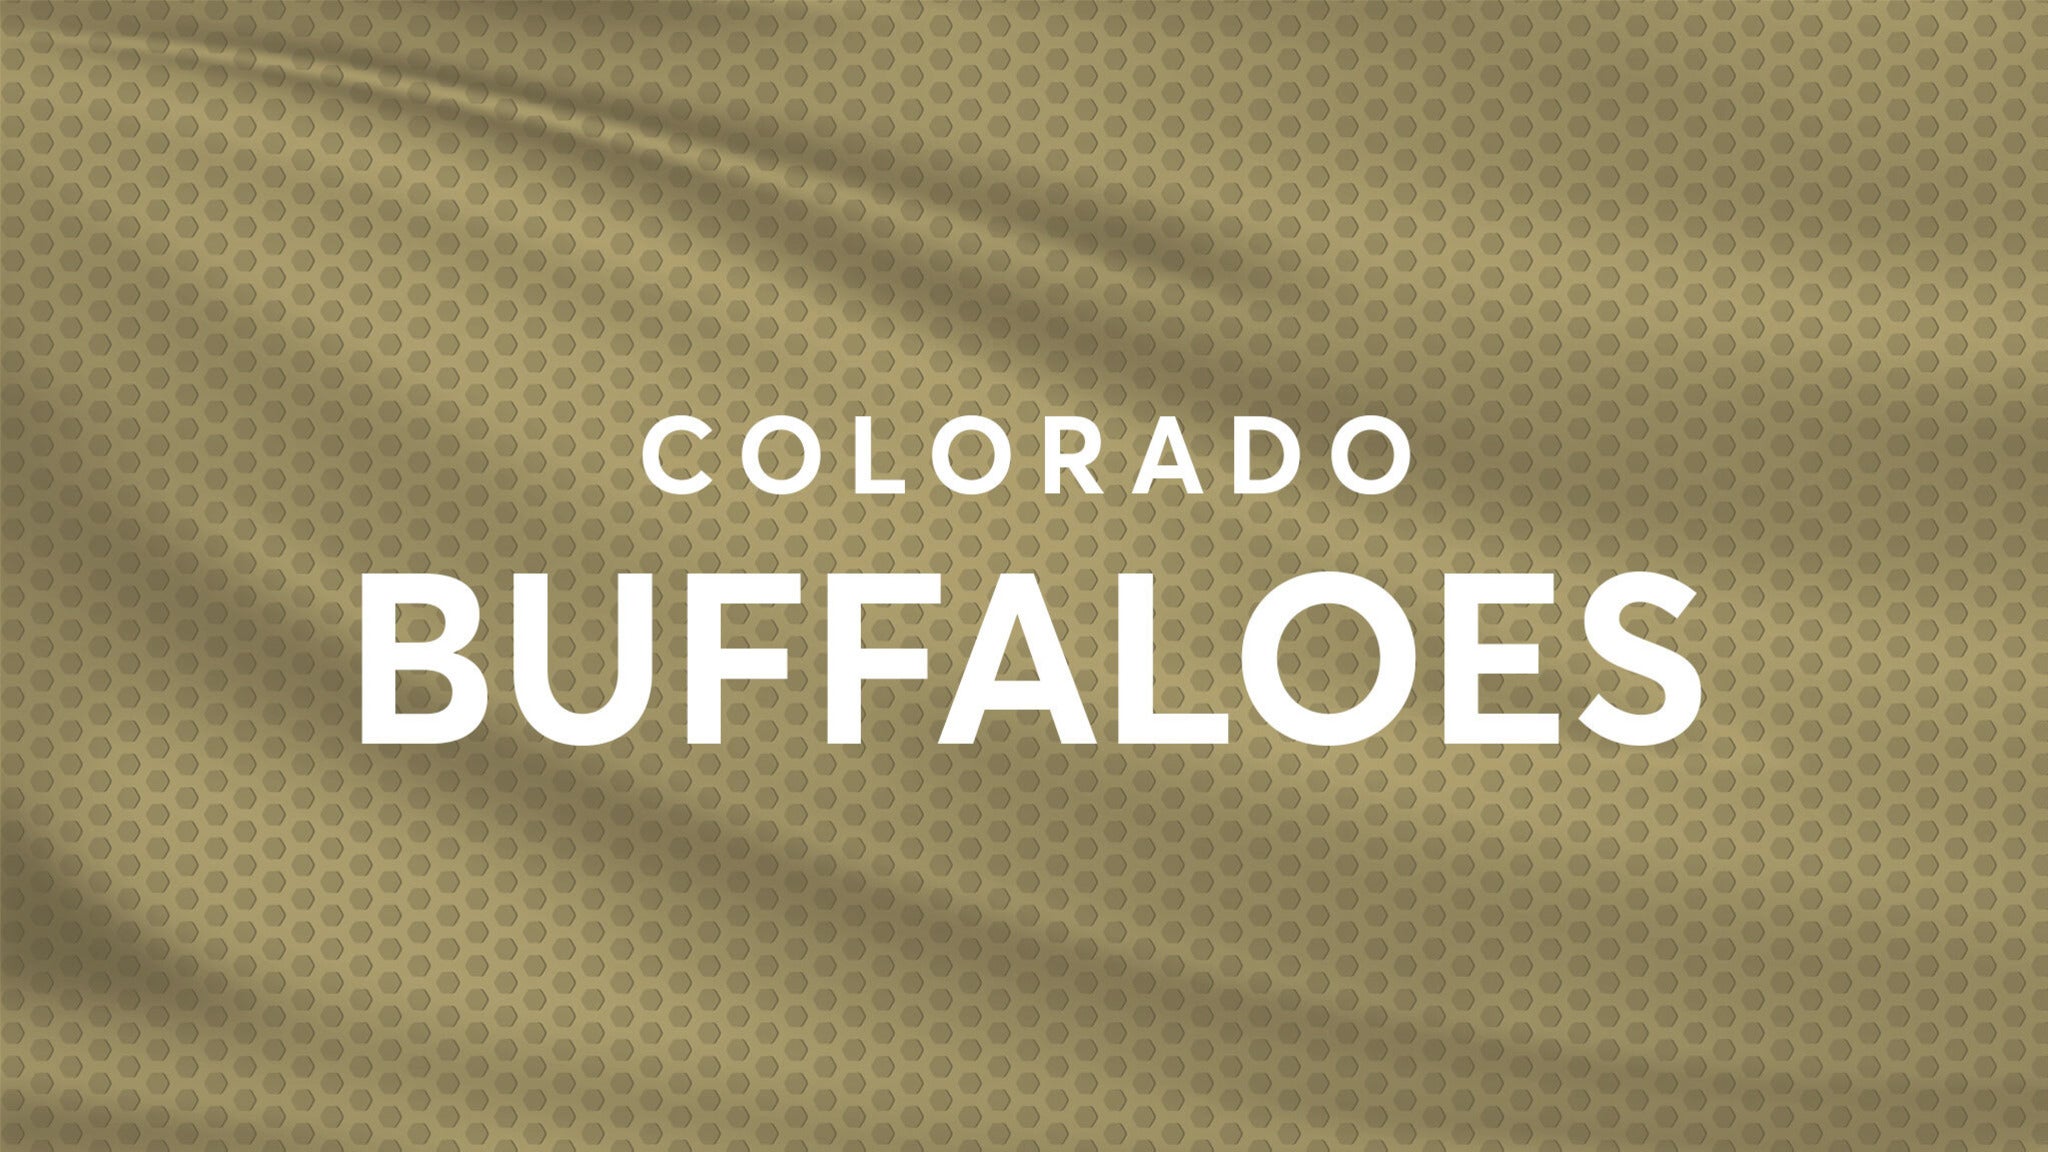 Colorado Buffaloes Football vs. Arizona Wildcats Football